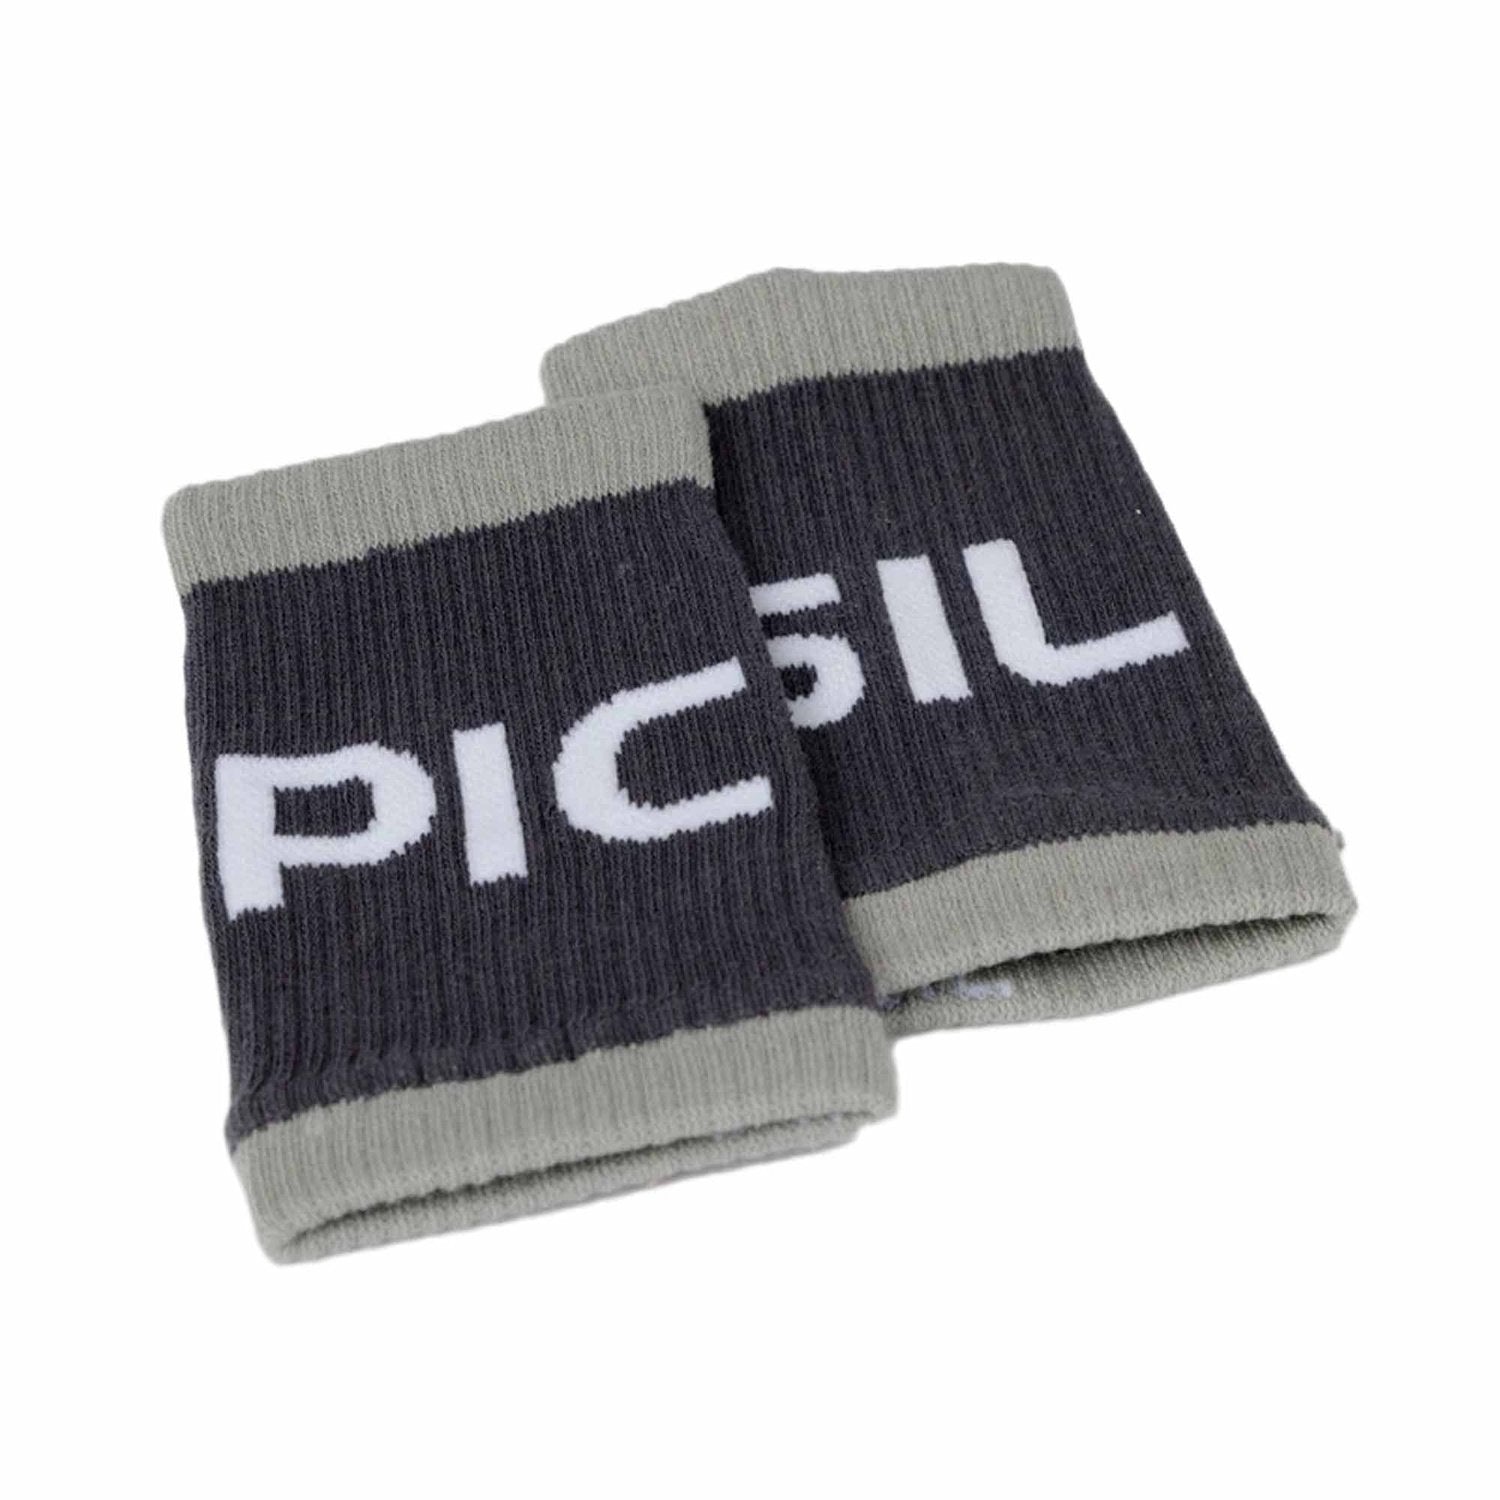 PicSil Wrist Bands (Schweissbänder) Grau kaufen bei HighPowered.ch